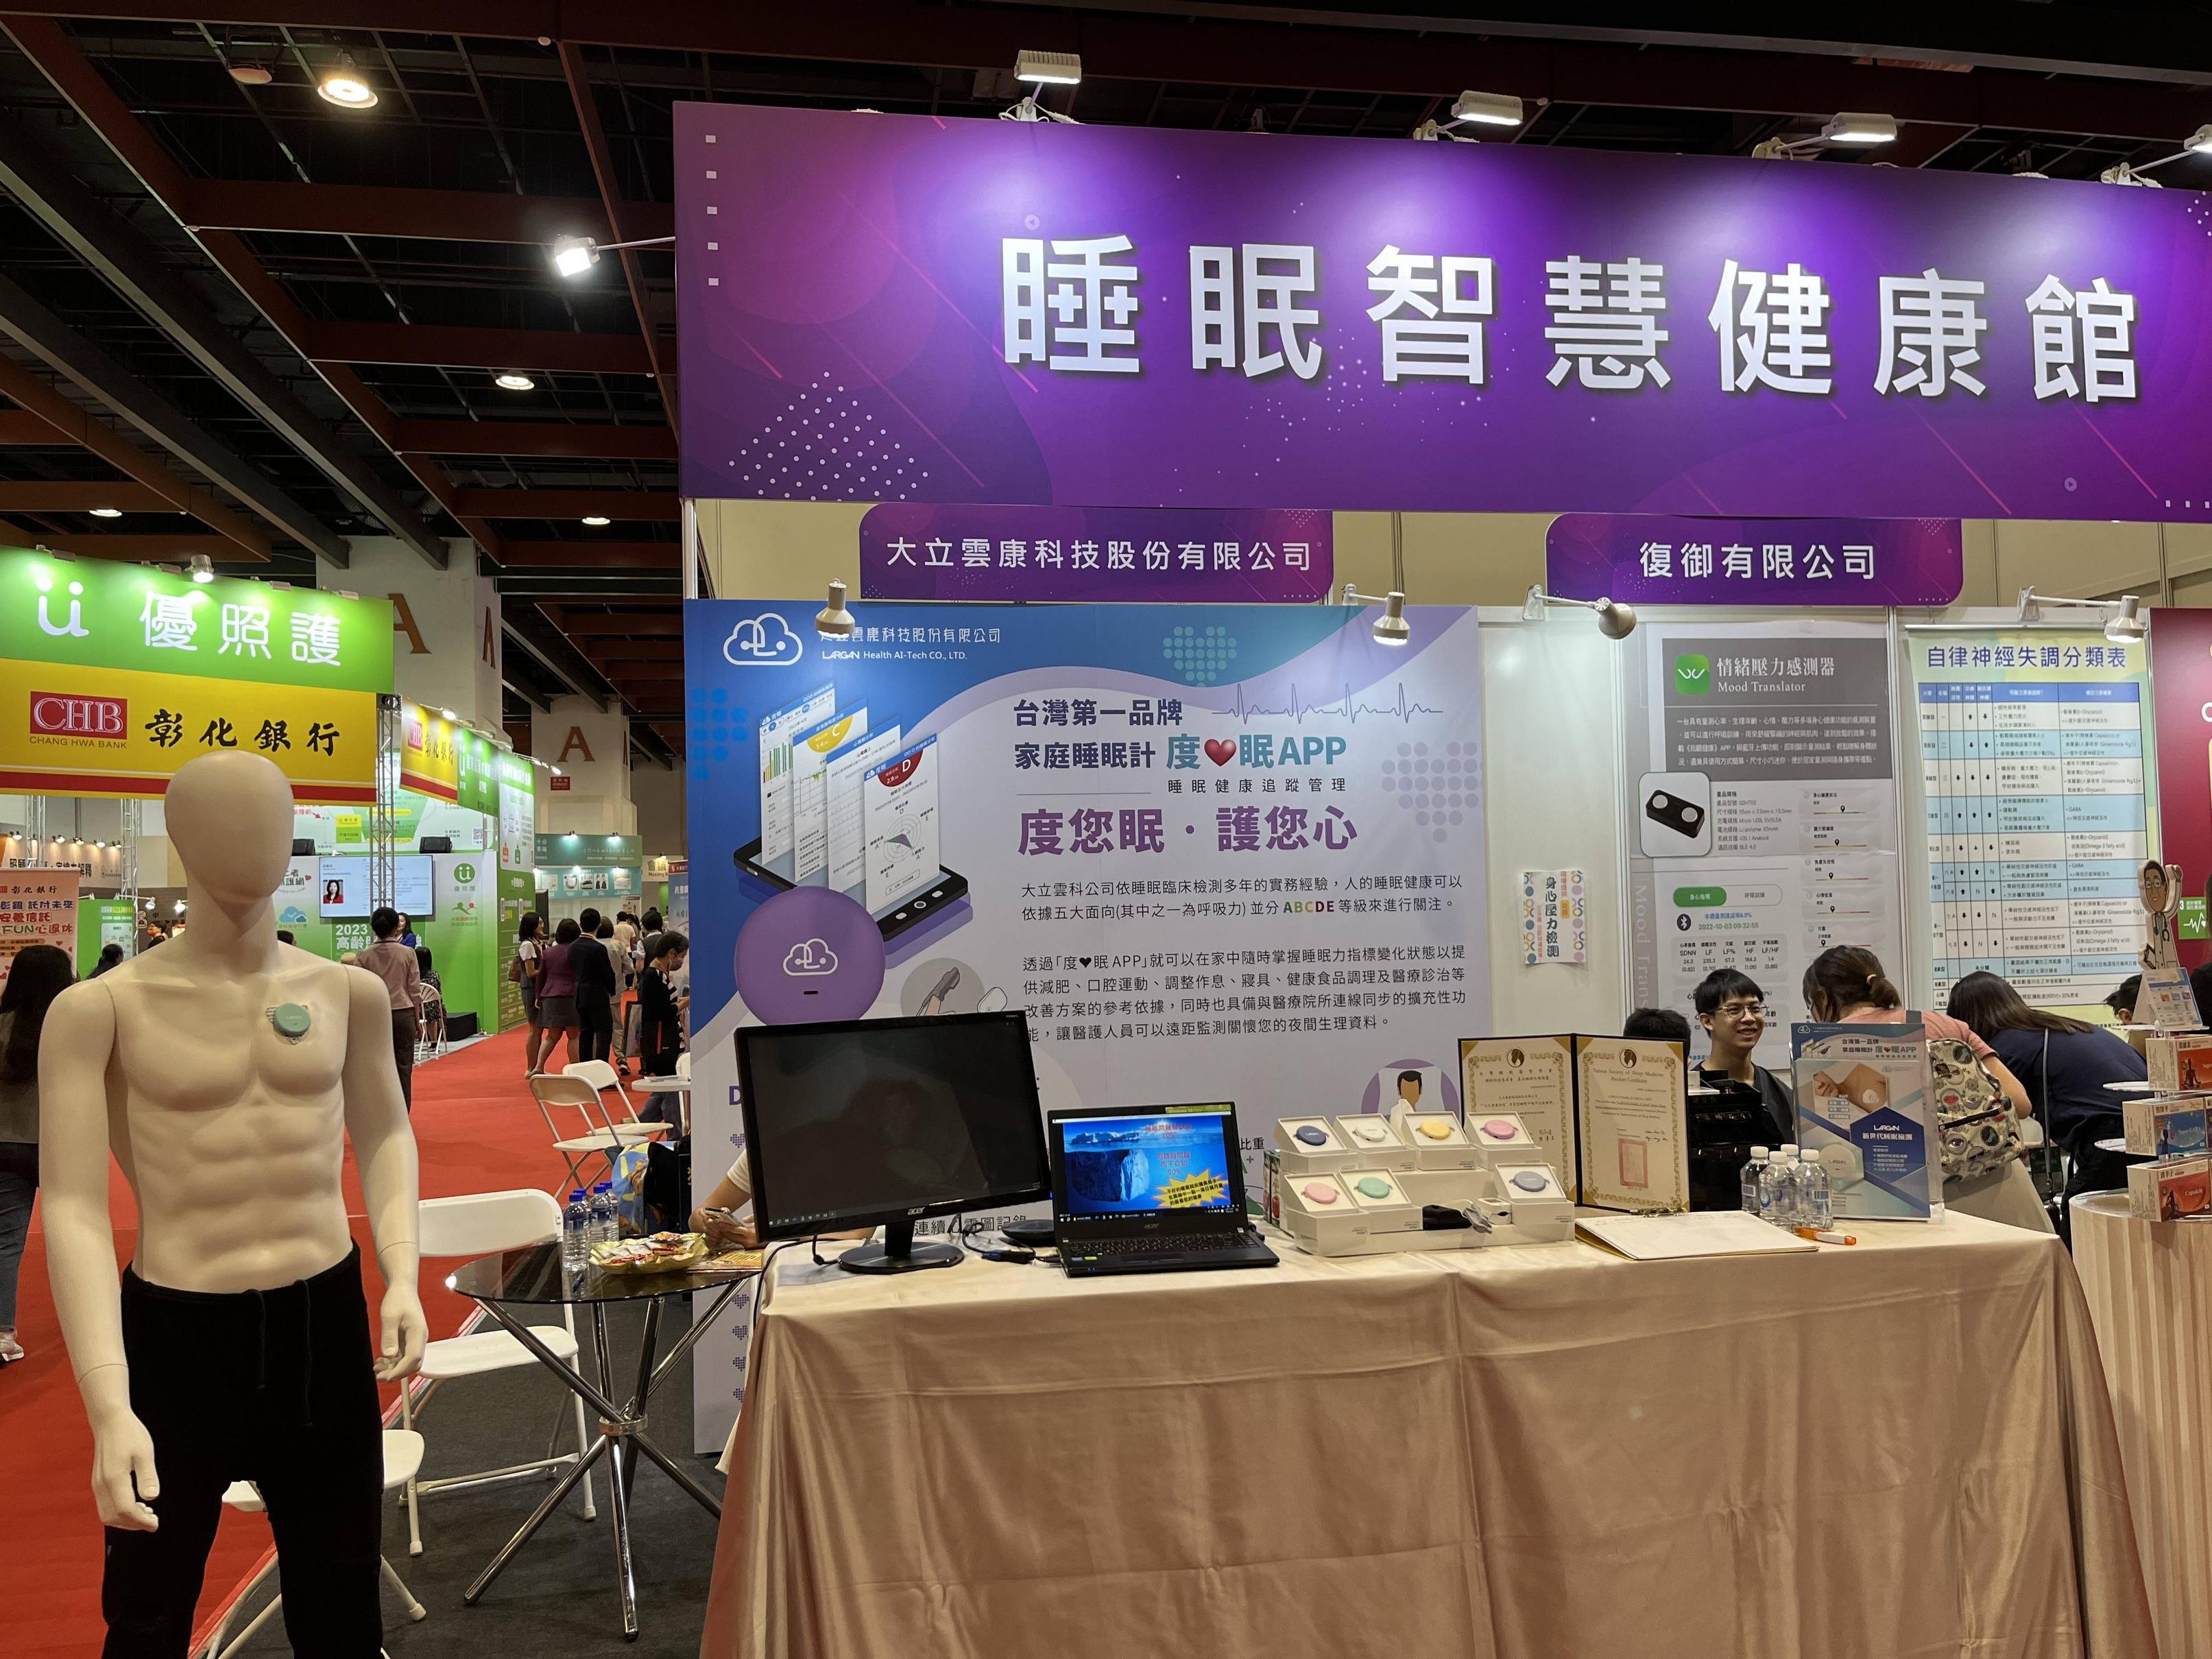 The 4th Taipei International Care Expo